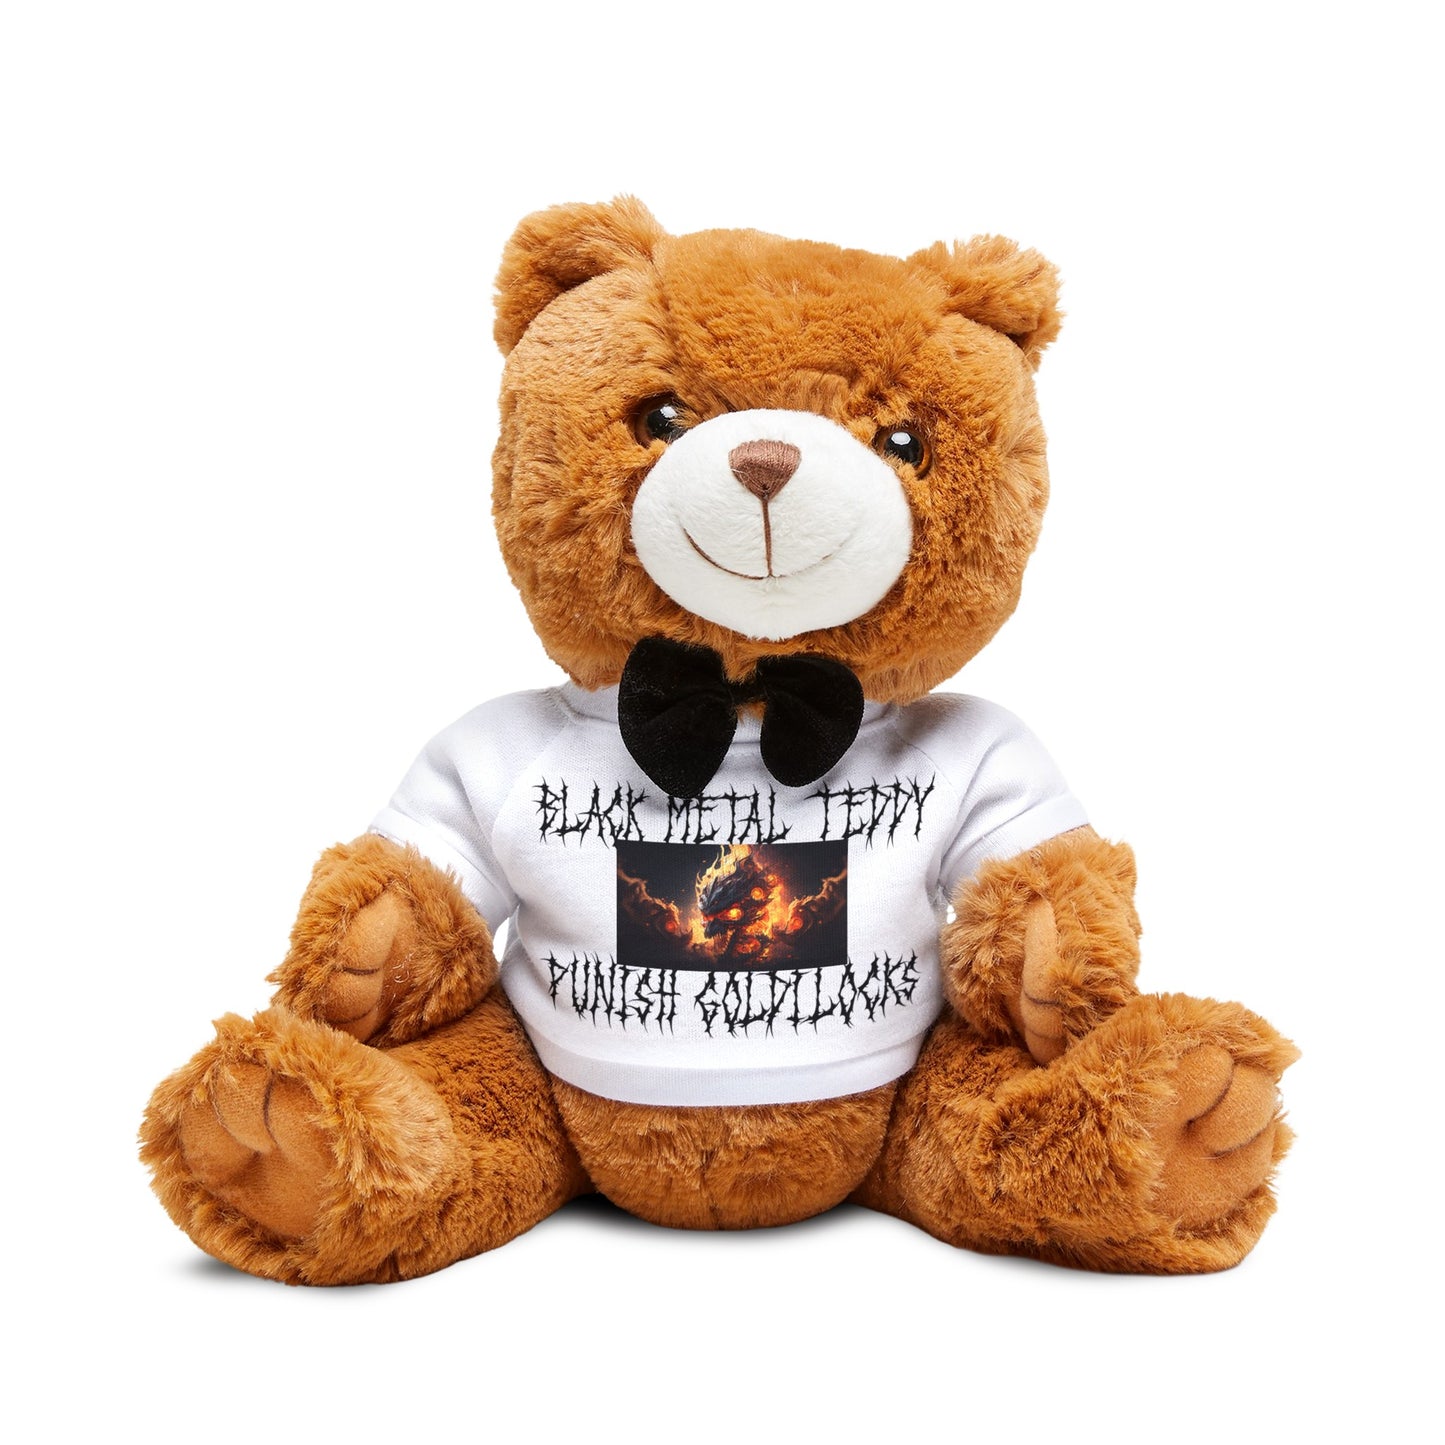 Black Metal Teddy - Punish Goldilocks T-Shirt